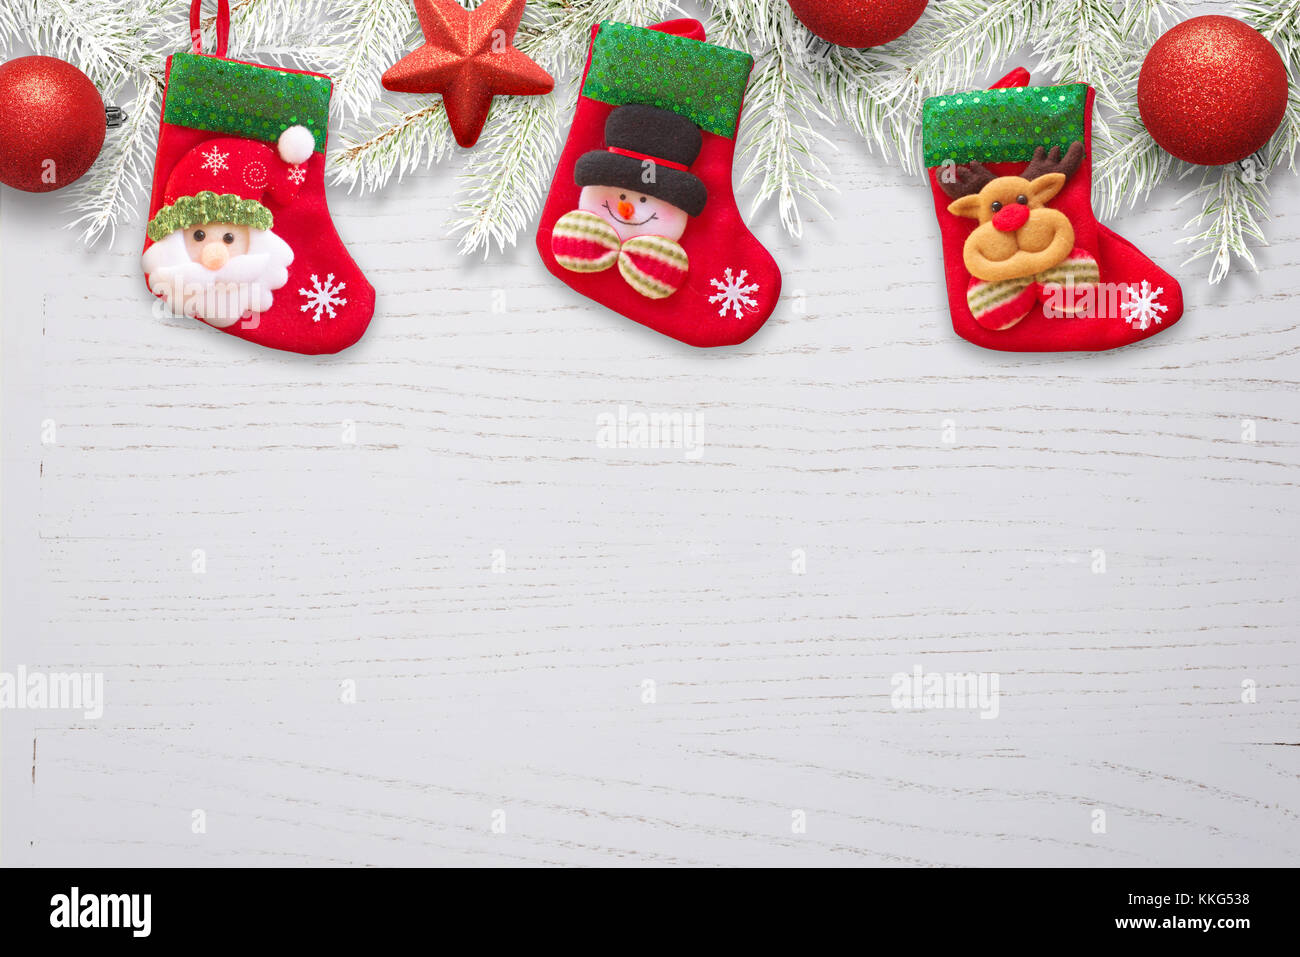 Socke Warten auf den Weihnachtsmann Weihnachten Geschenke auf whiteee Schreibtisch aus Holz mit Verzierungen nad Tannenzweigen. Stockfoto